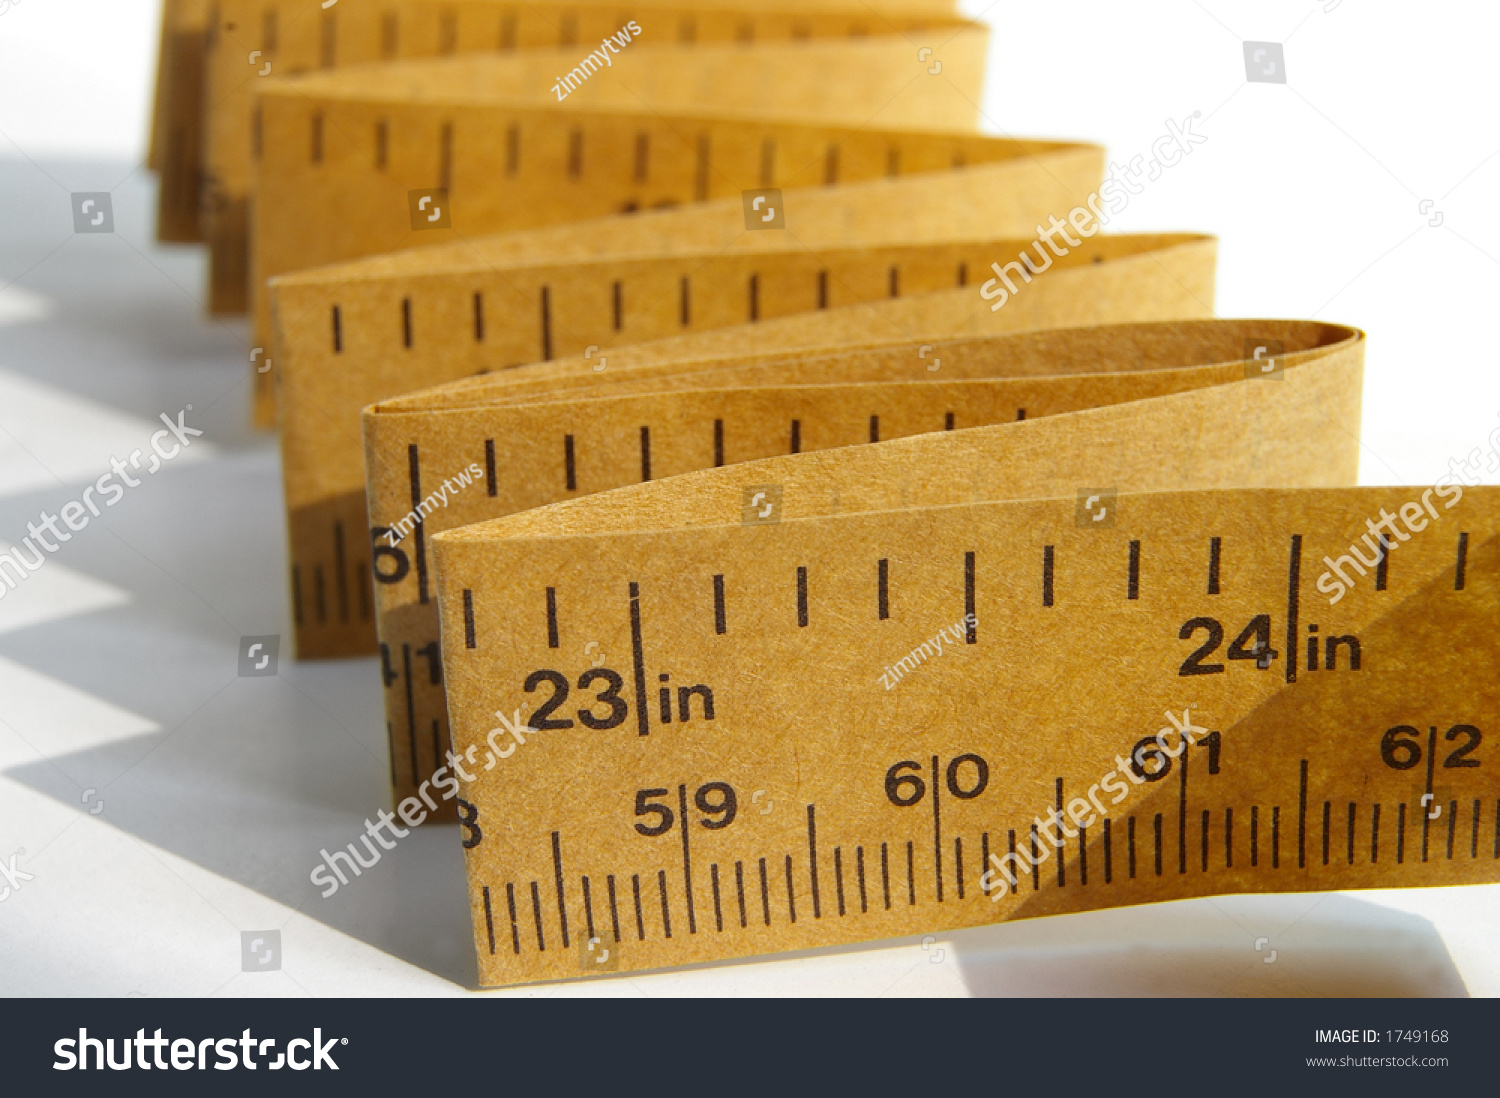 Paper Ruler Stock Photo 1749168 : Shutterstock